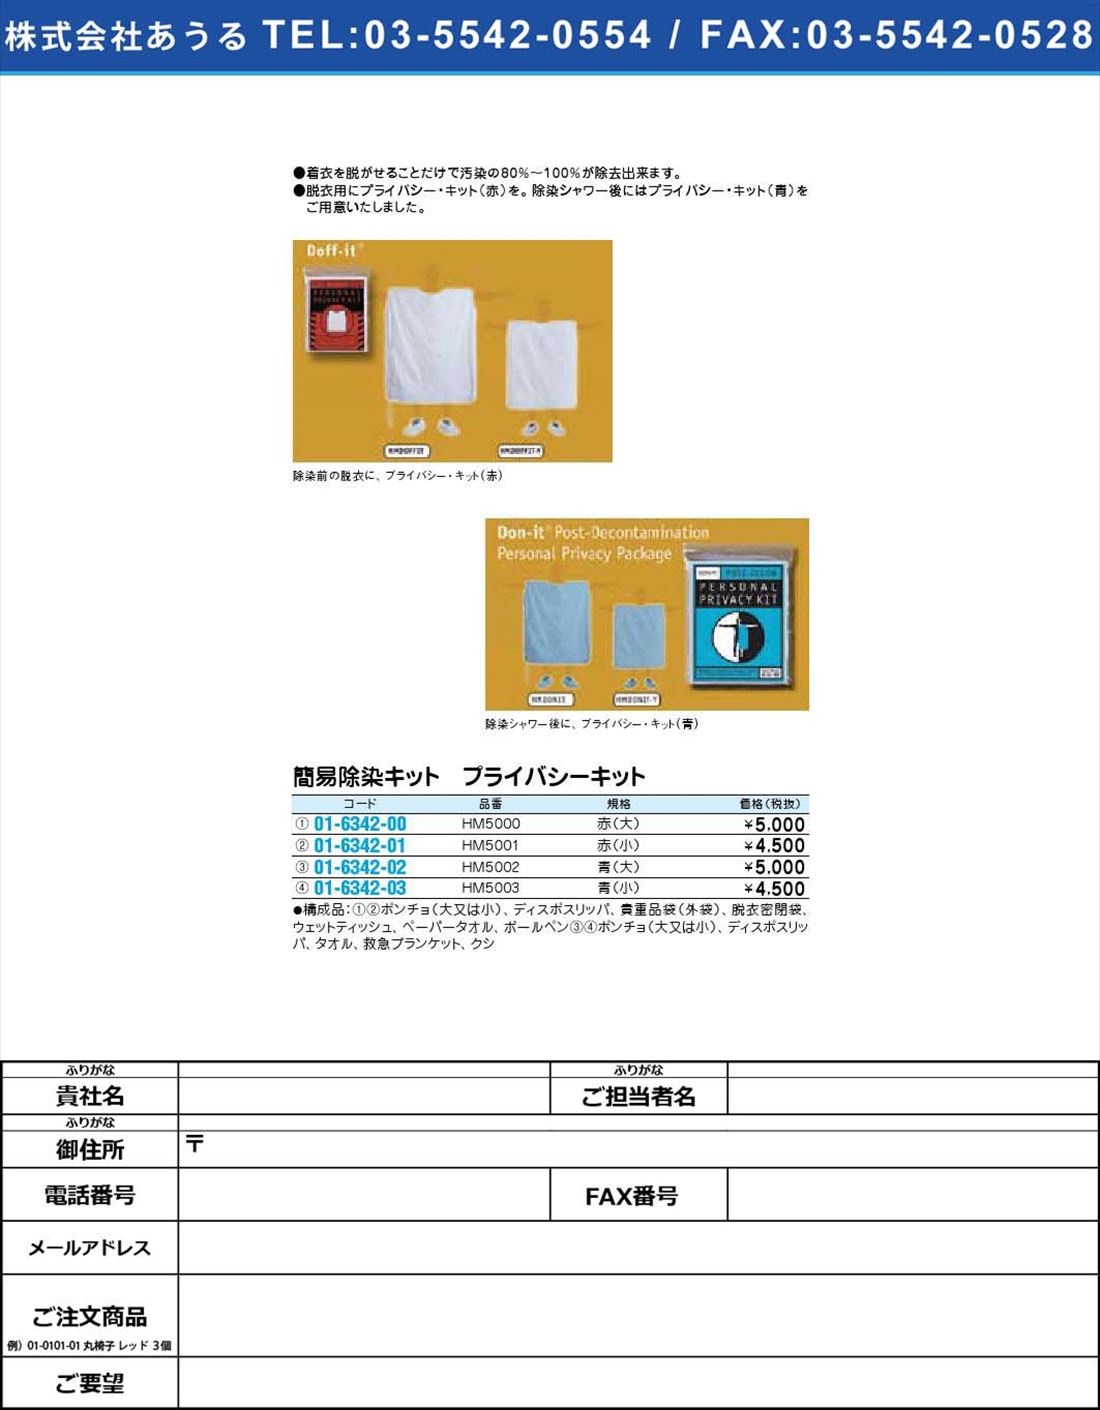 簡易除染キット プライバシーキット HM5000(01-6342-00)【1個単位】